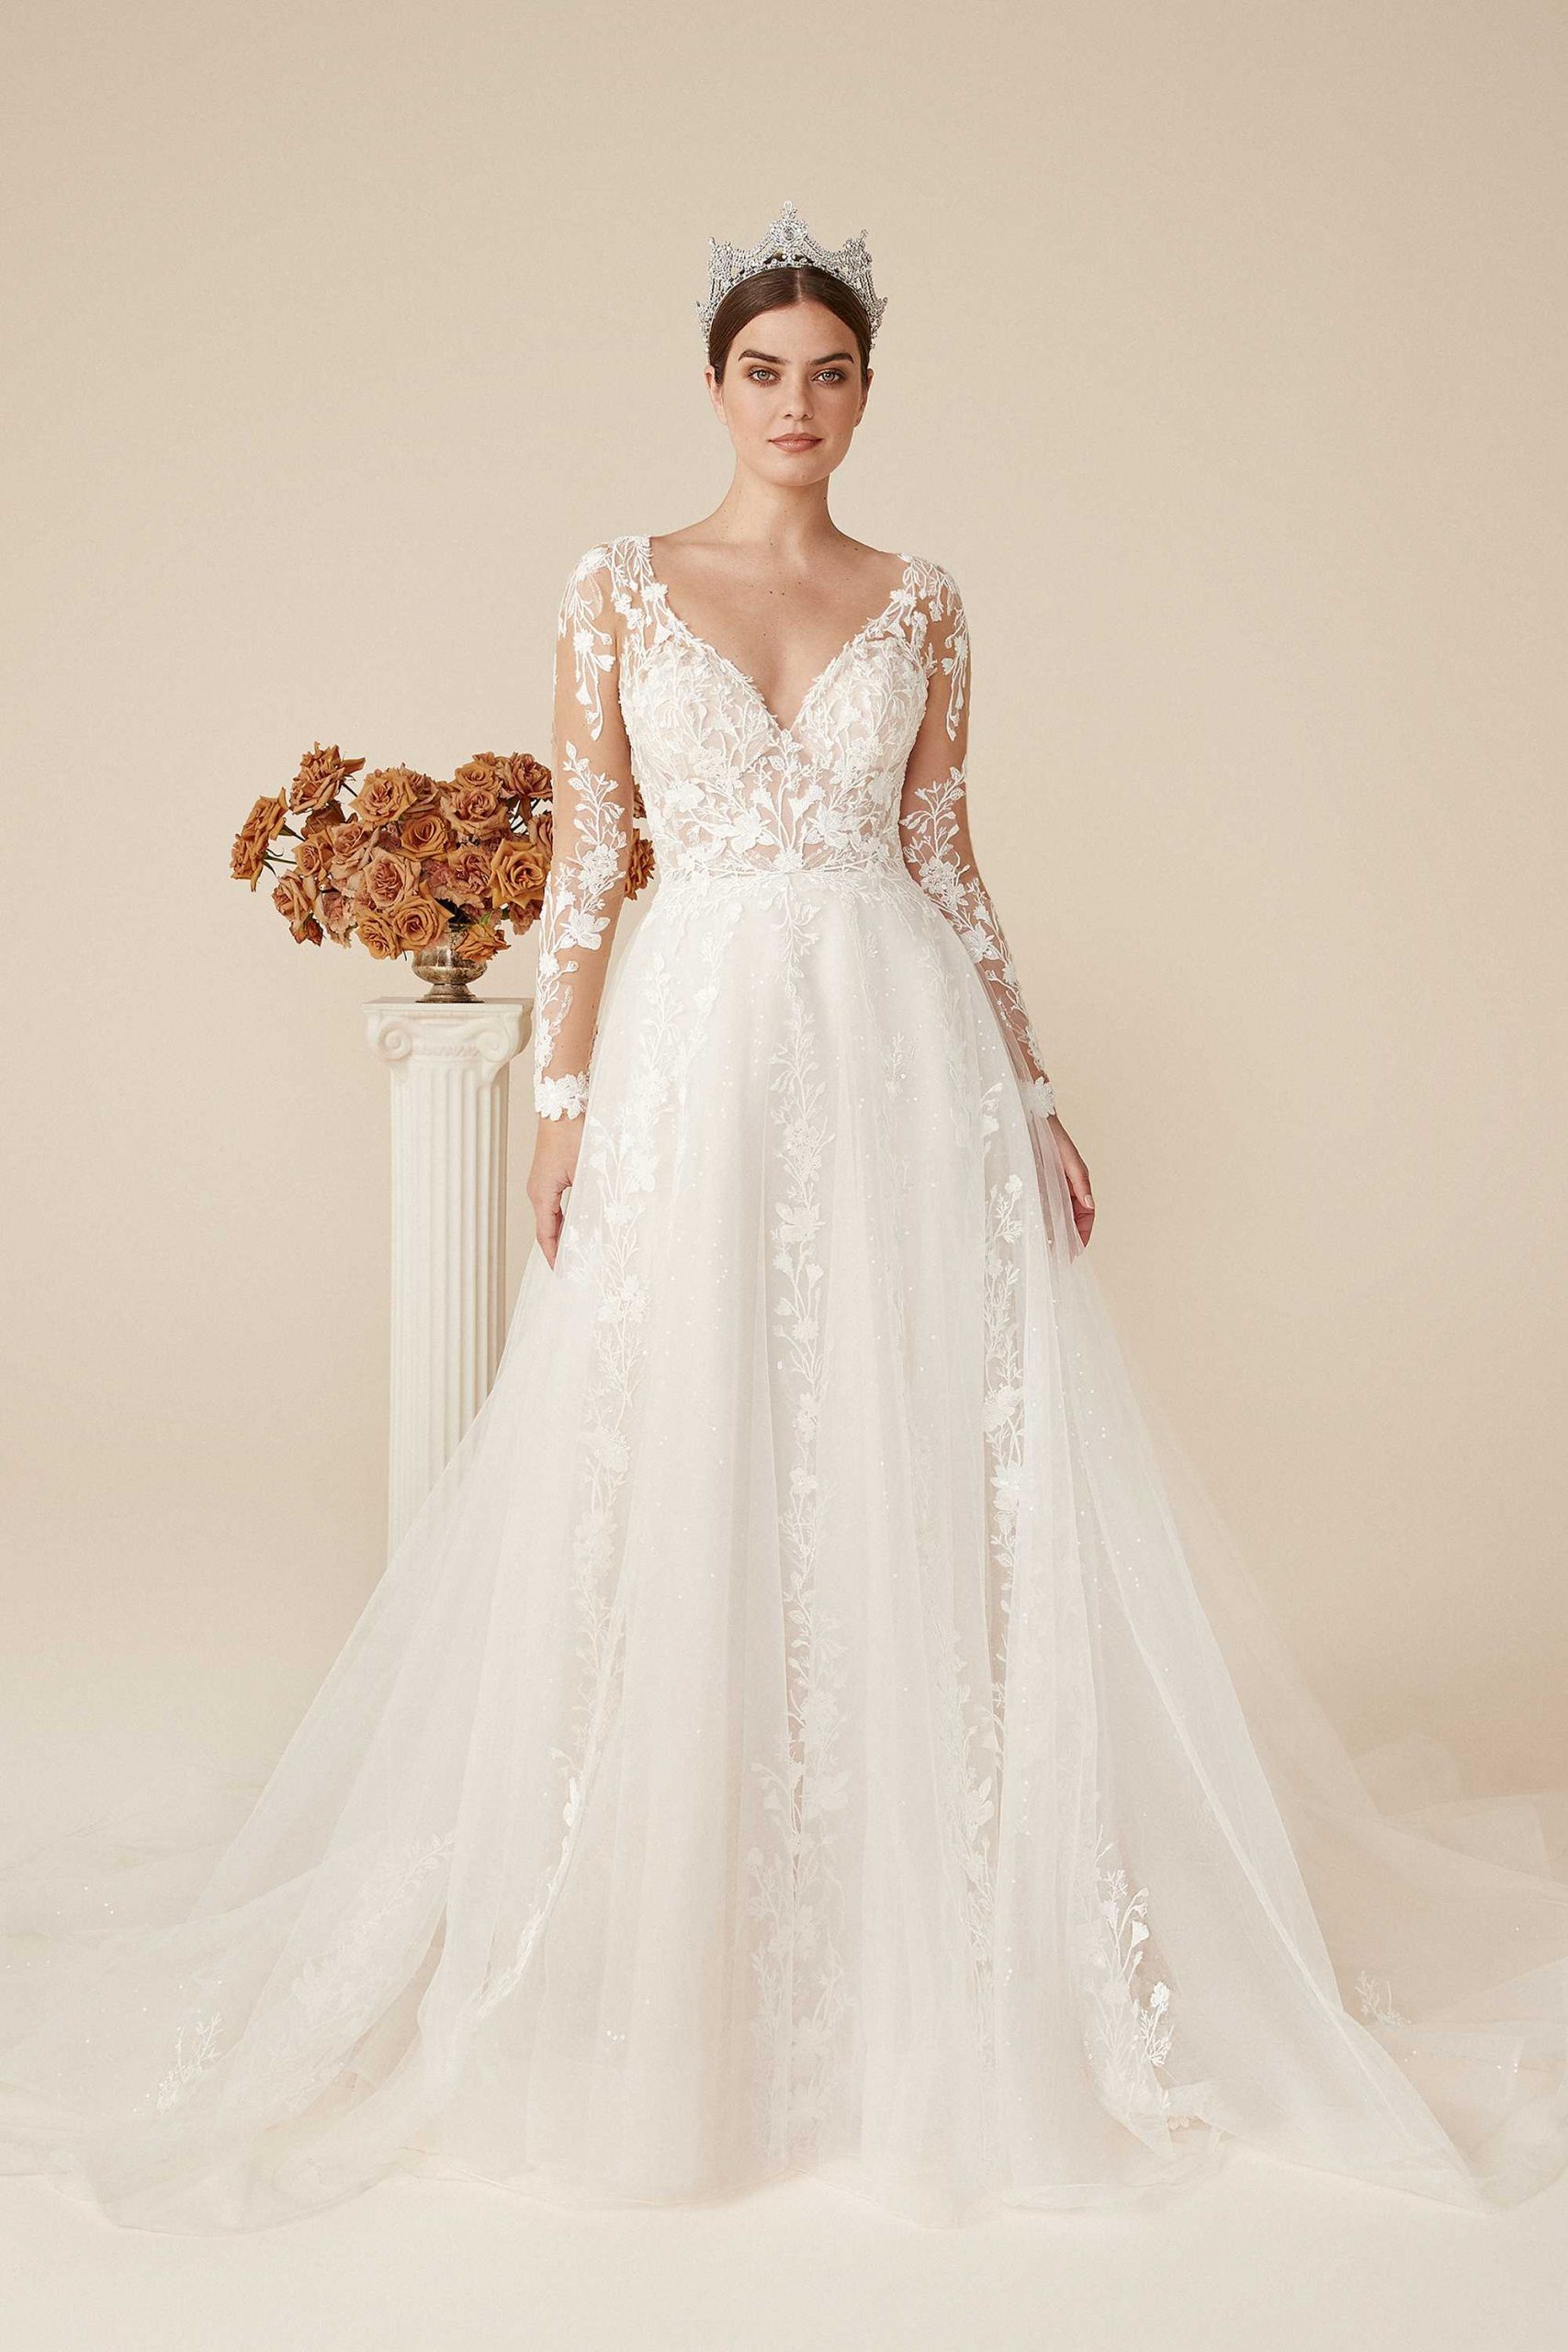 WEDDING DRESSES IN OUR SHOWROOM | Melange Bridal Salon